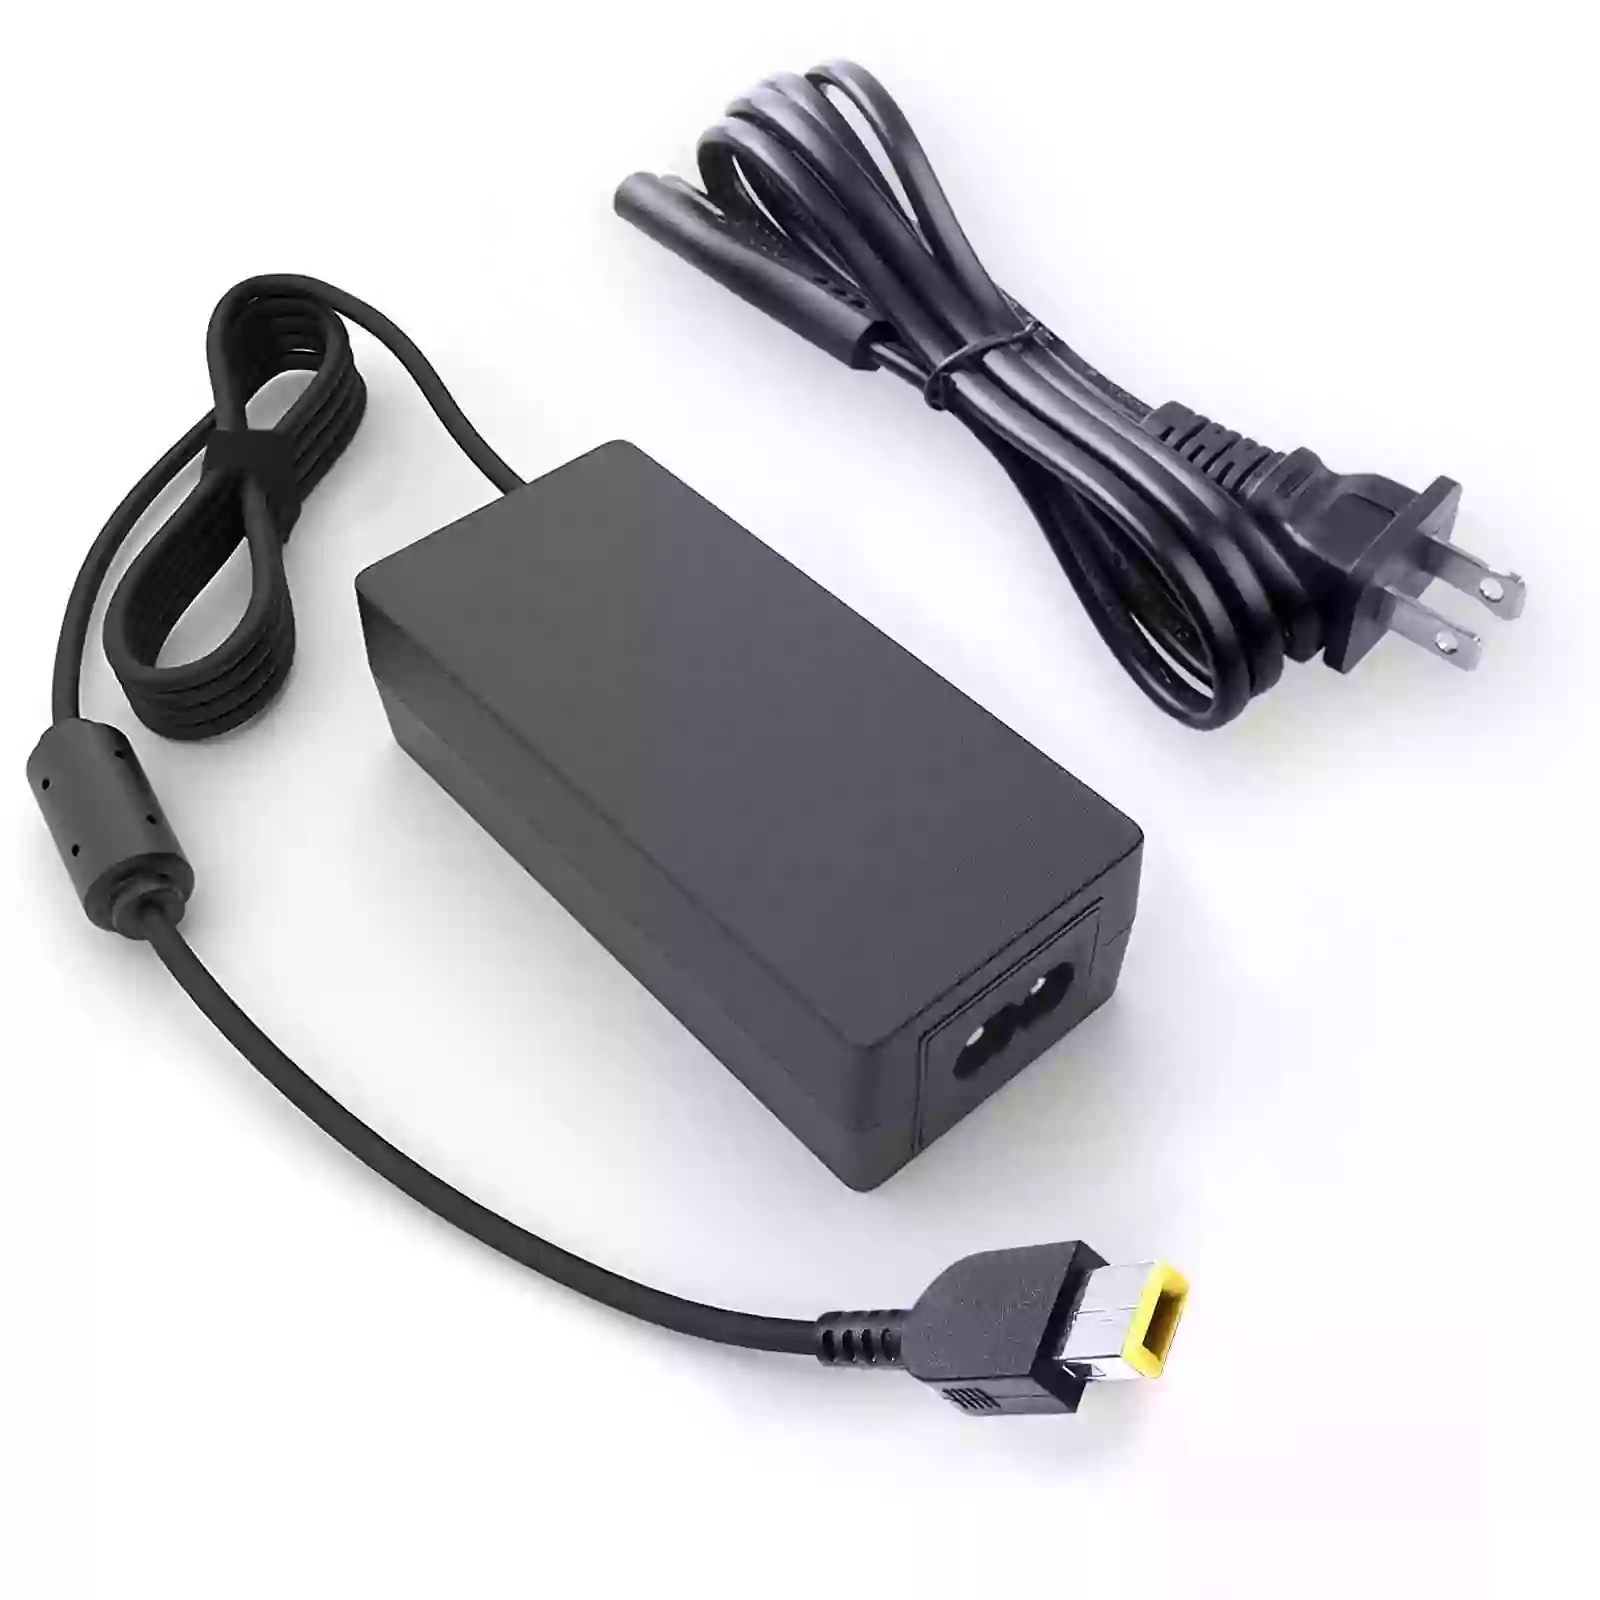 lenovo 20v USB_shape power adapter for laptop